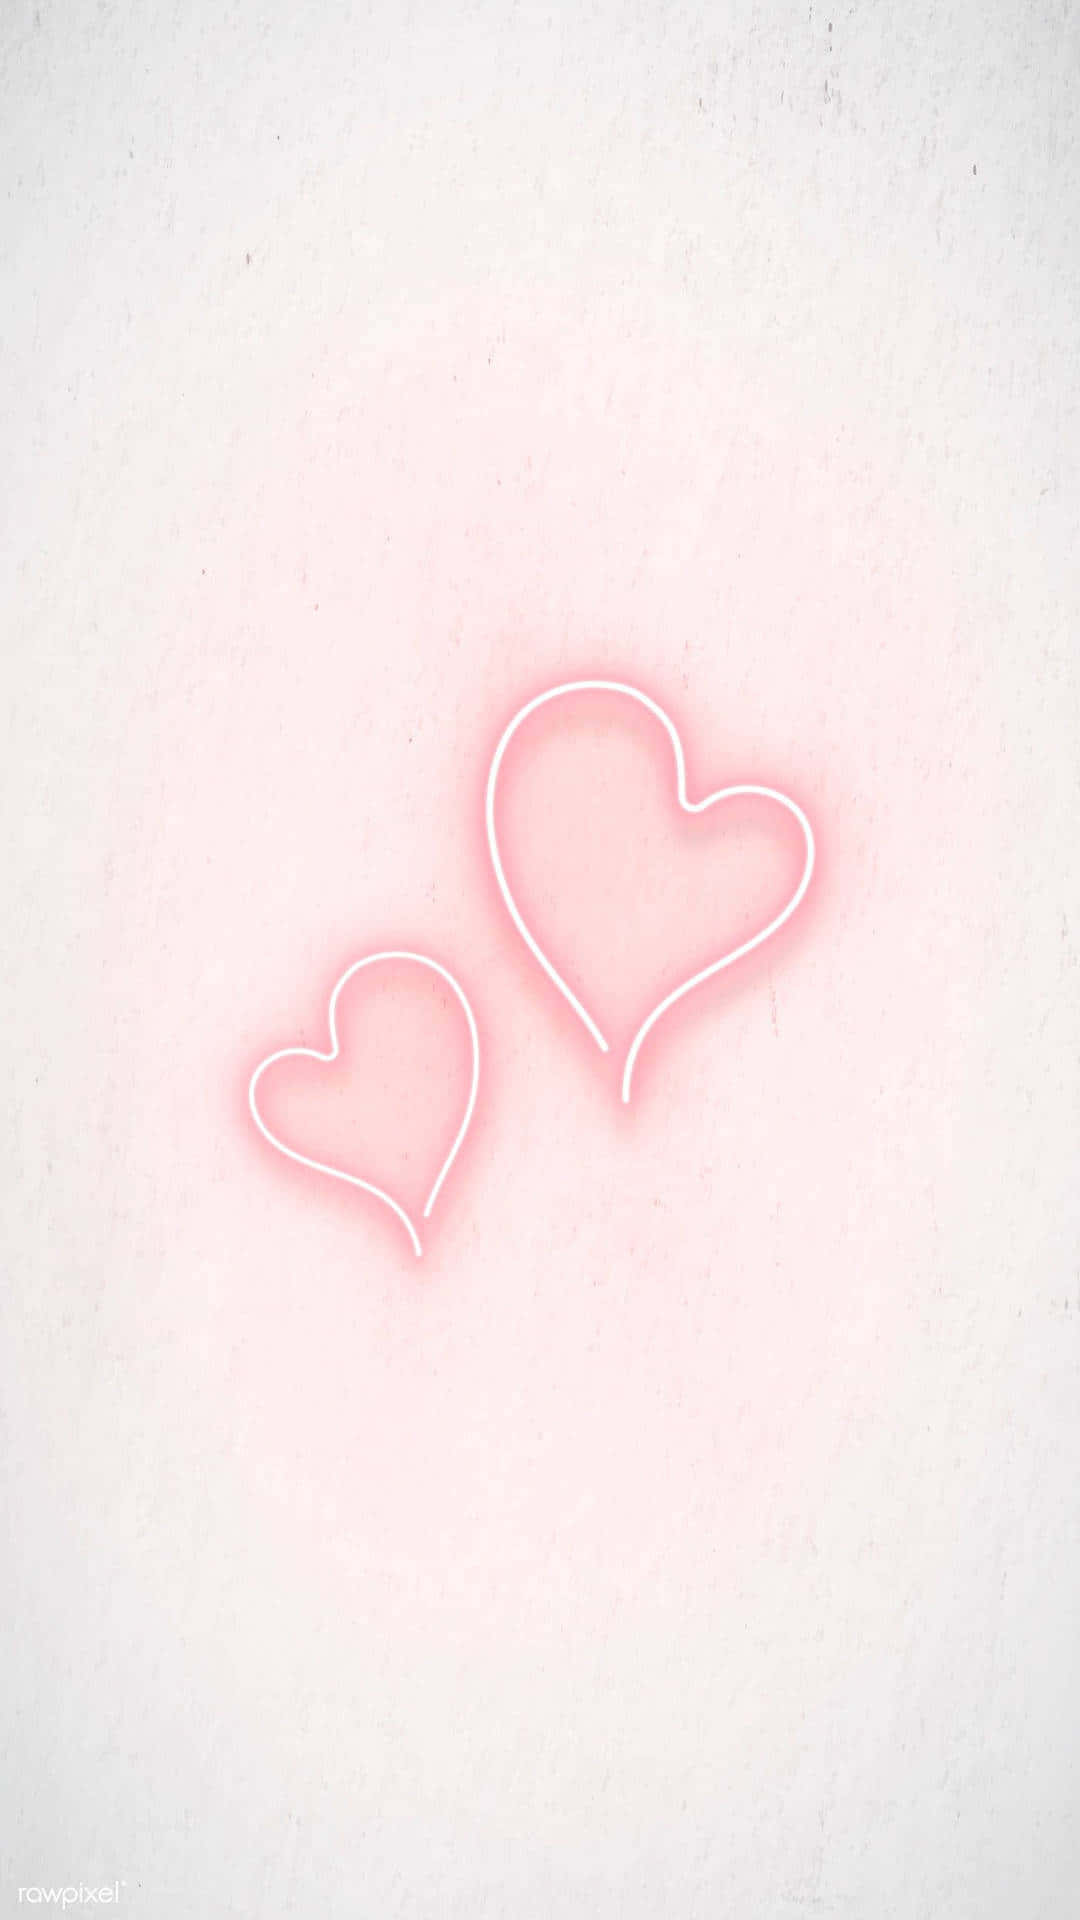 50+] Valentine Wallpaper for iPhone - WallpaperSafari